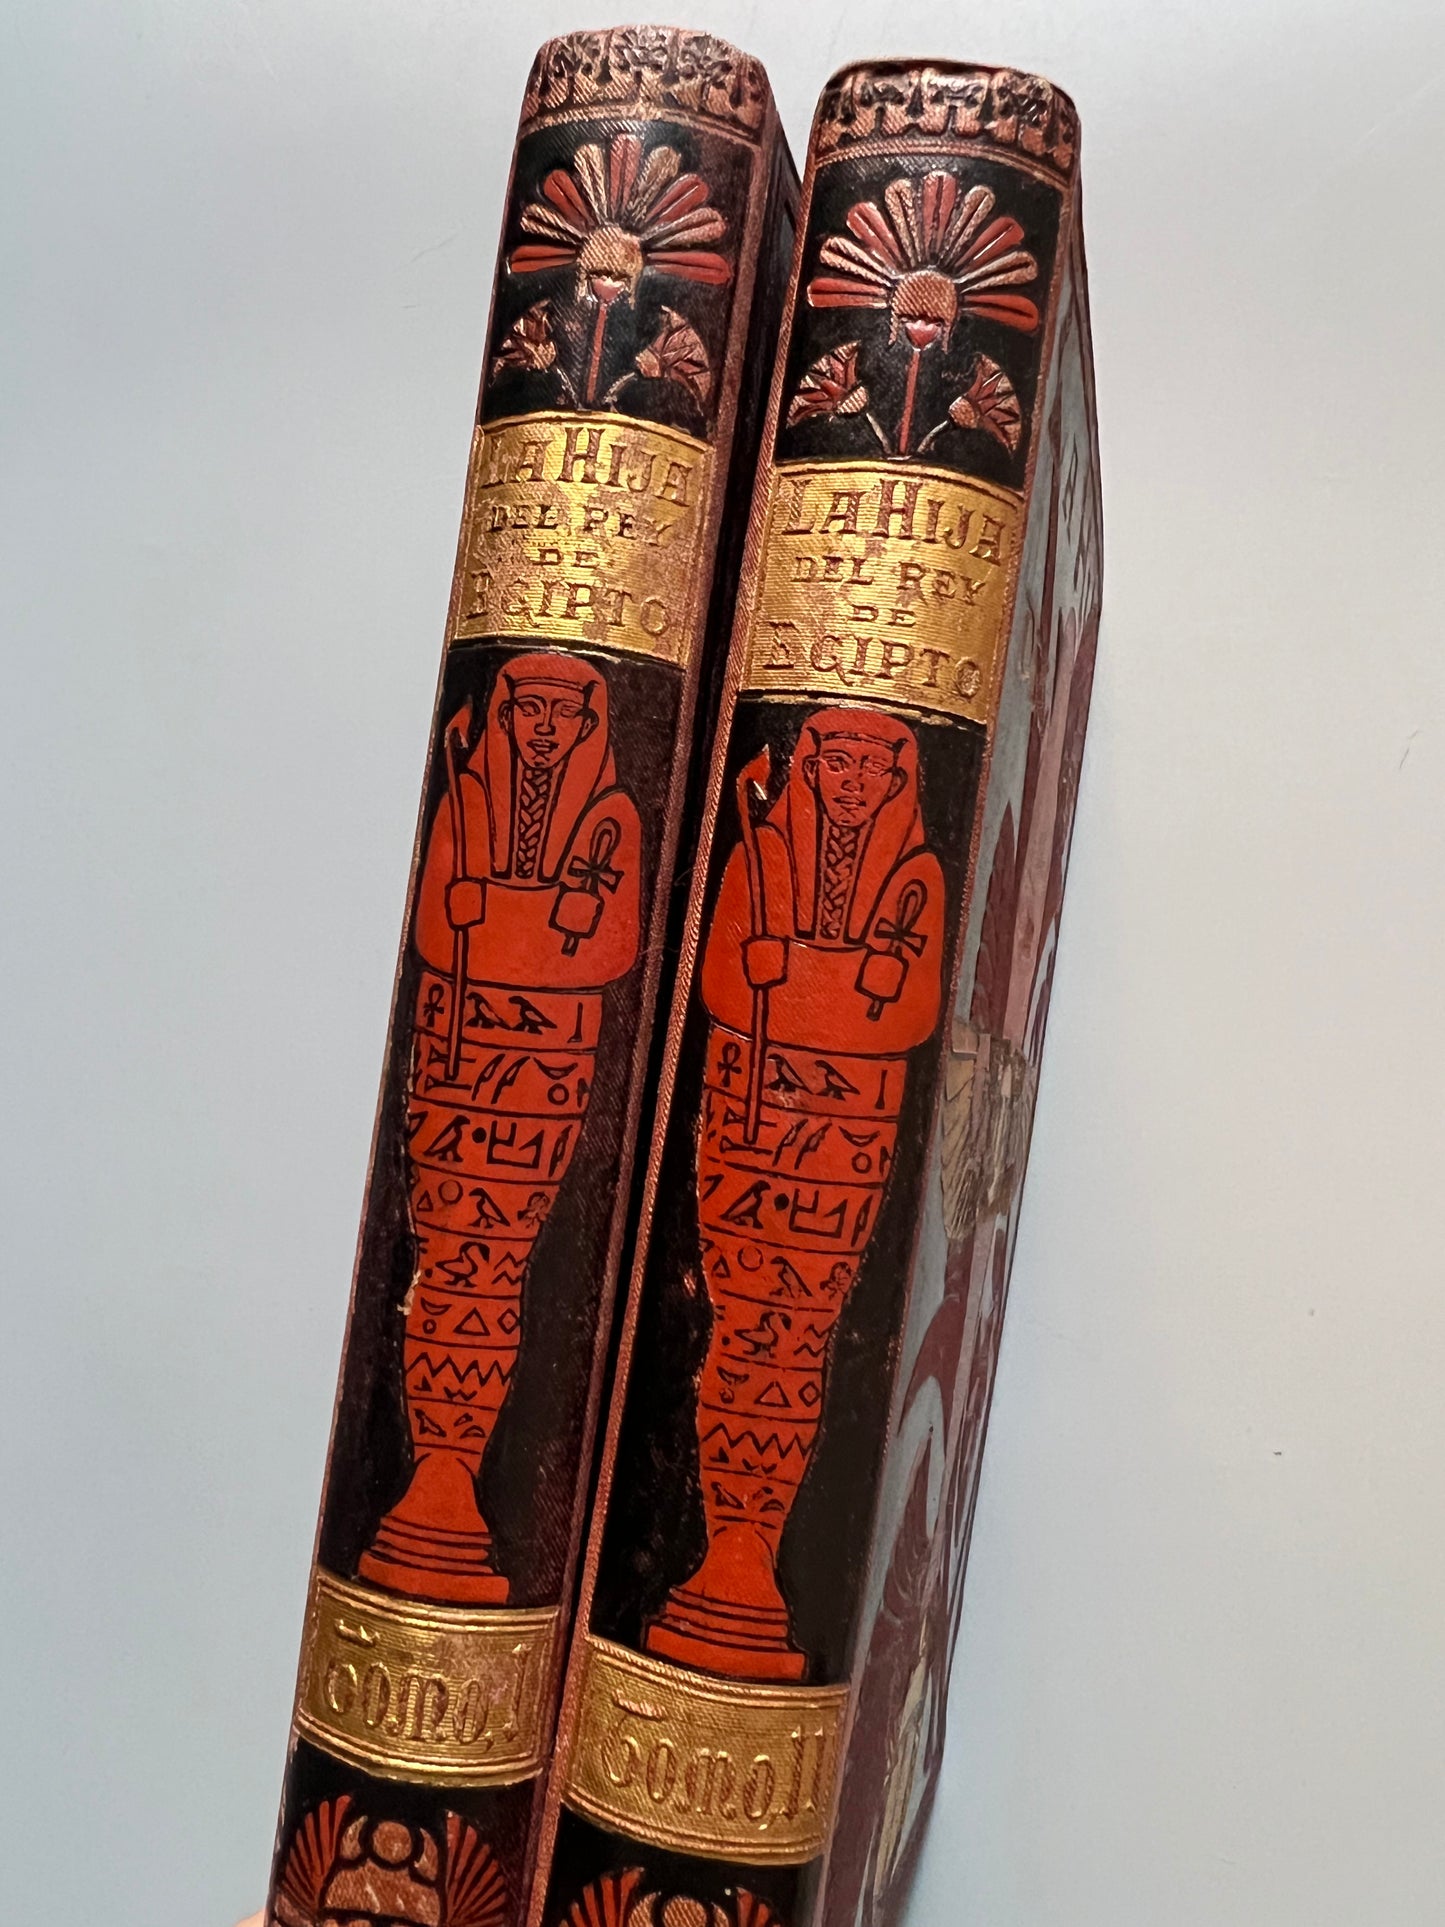 La hija del rey de Egipto, Jorge Ebers + 12 originales de Arturo Mélida - Biblioteca Arte y Letras, 1882-3